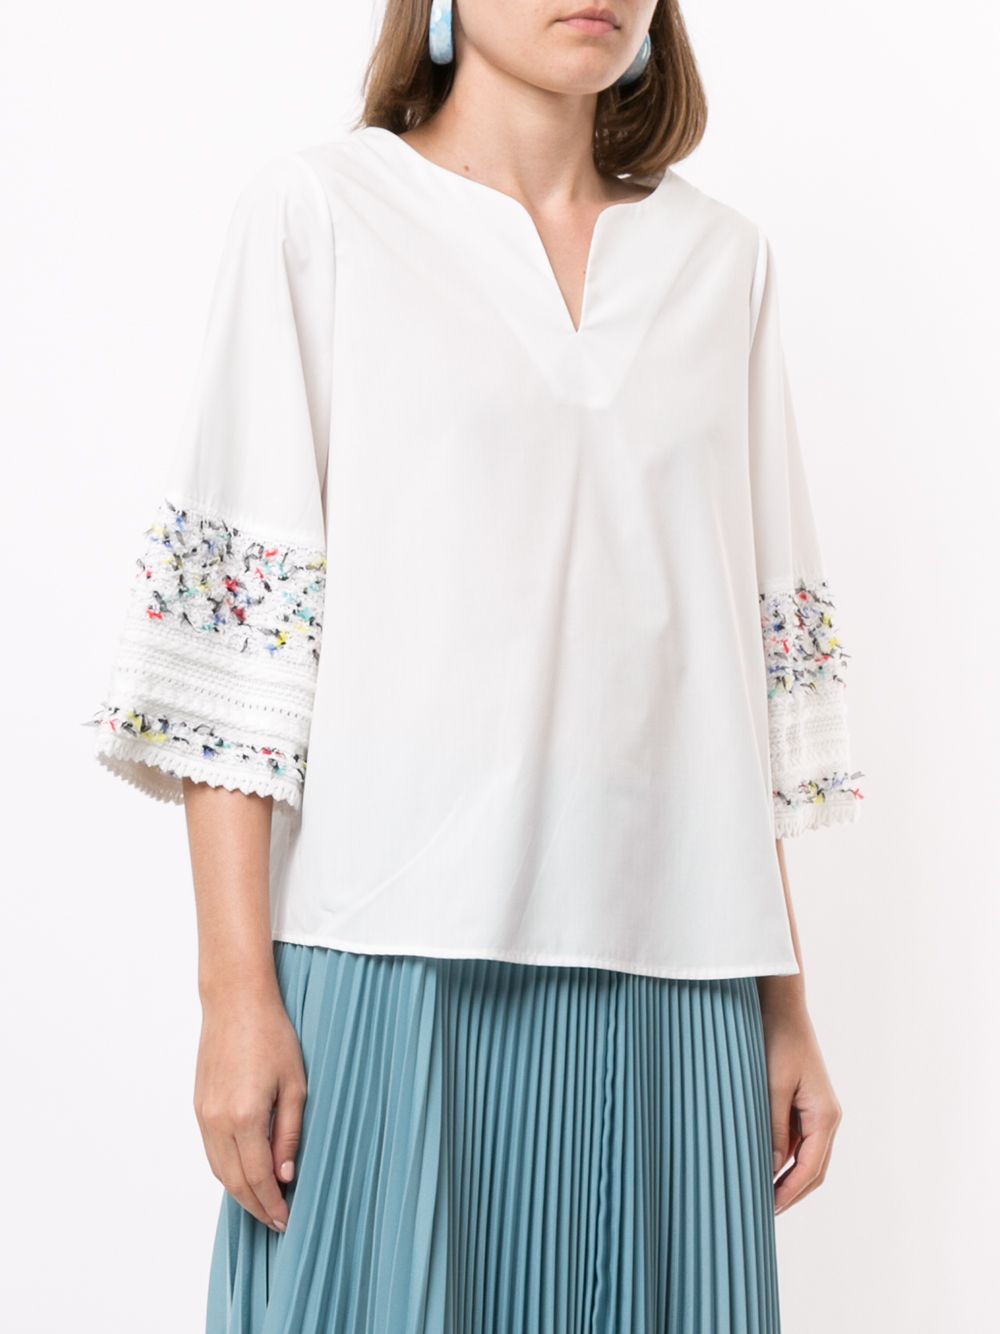 фото Coohem блузка с фактурной отделкой рукавами